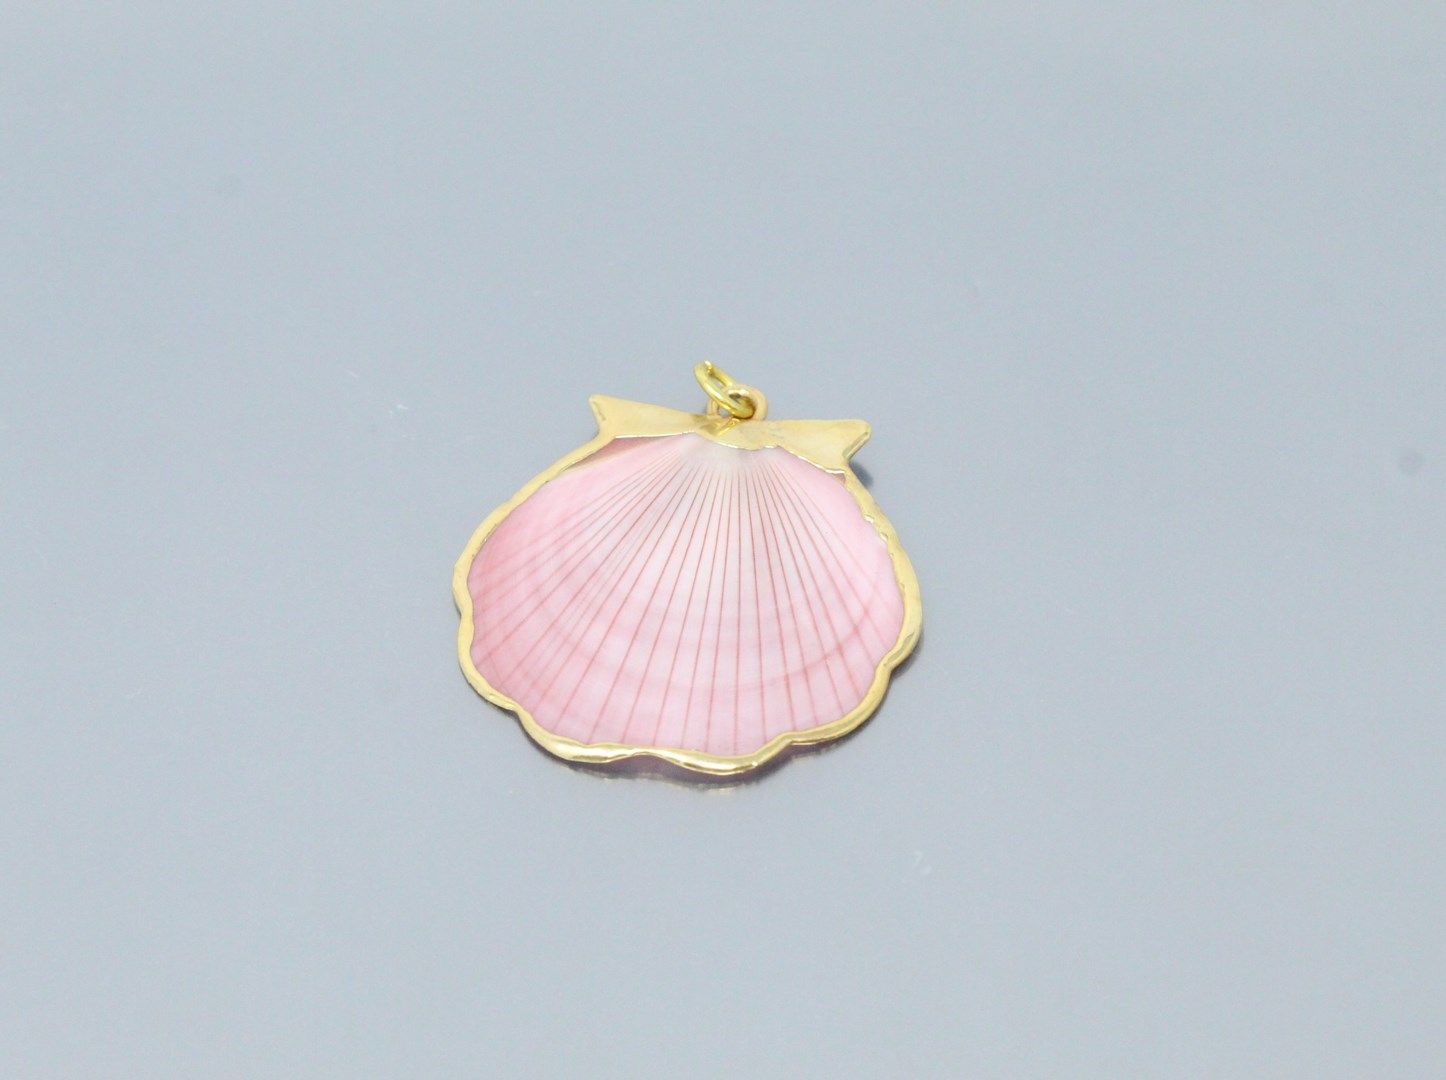 Null Ciondolo conchiglia rosa chiaro in metallo dorato. 

Diametro: 4 cm.